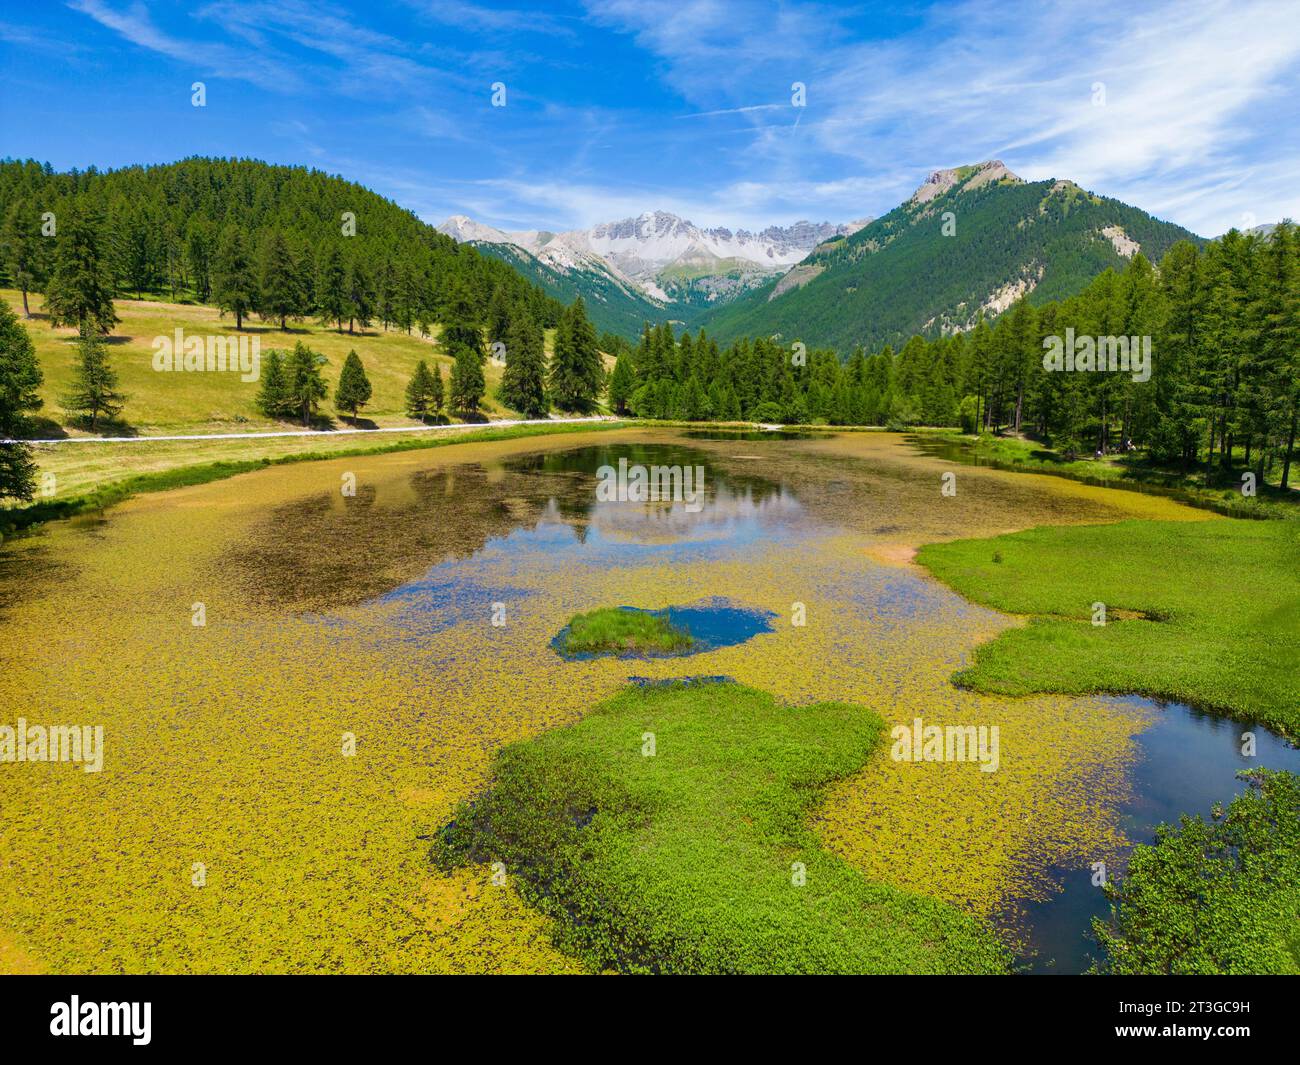 France, Hautes-Alpes, Parc naturel régional du Queyras, Lac d'Arvieux roue entouré d'une forêt de mélèzes (Larix decidua) (vue aérienne) Banque D'Images